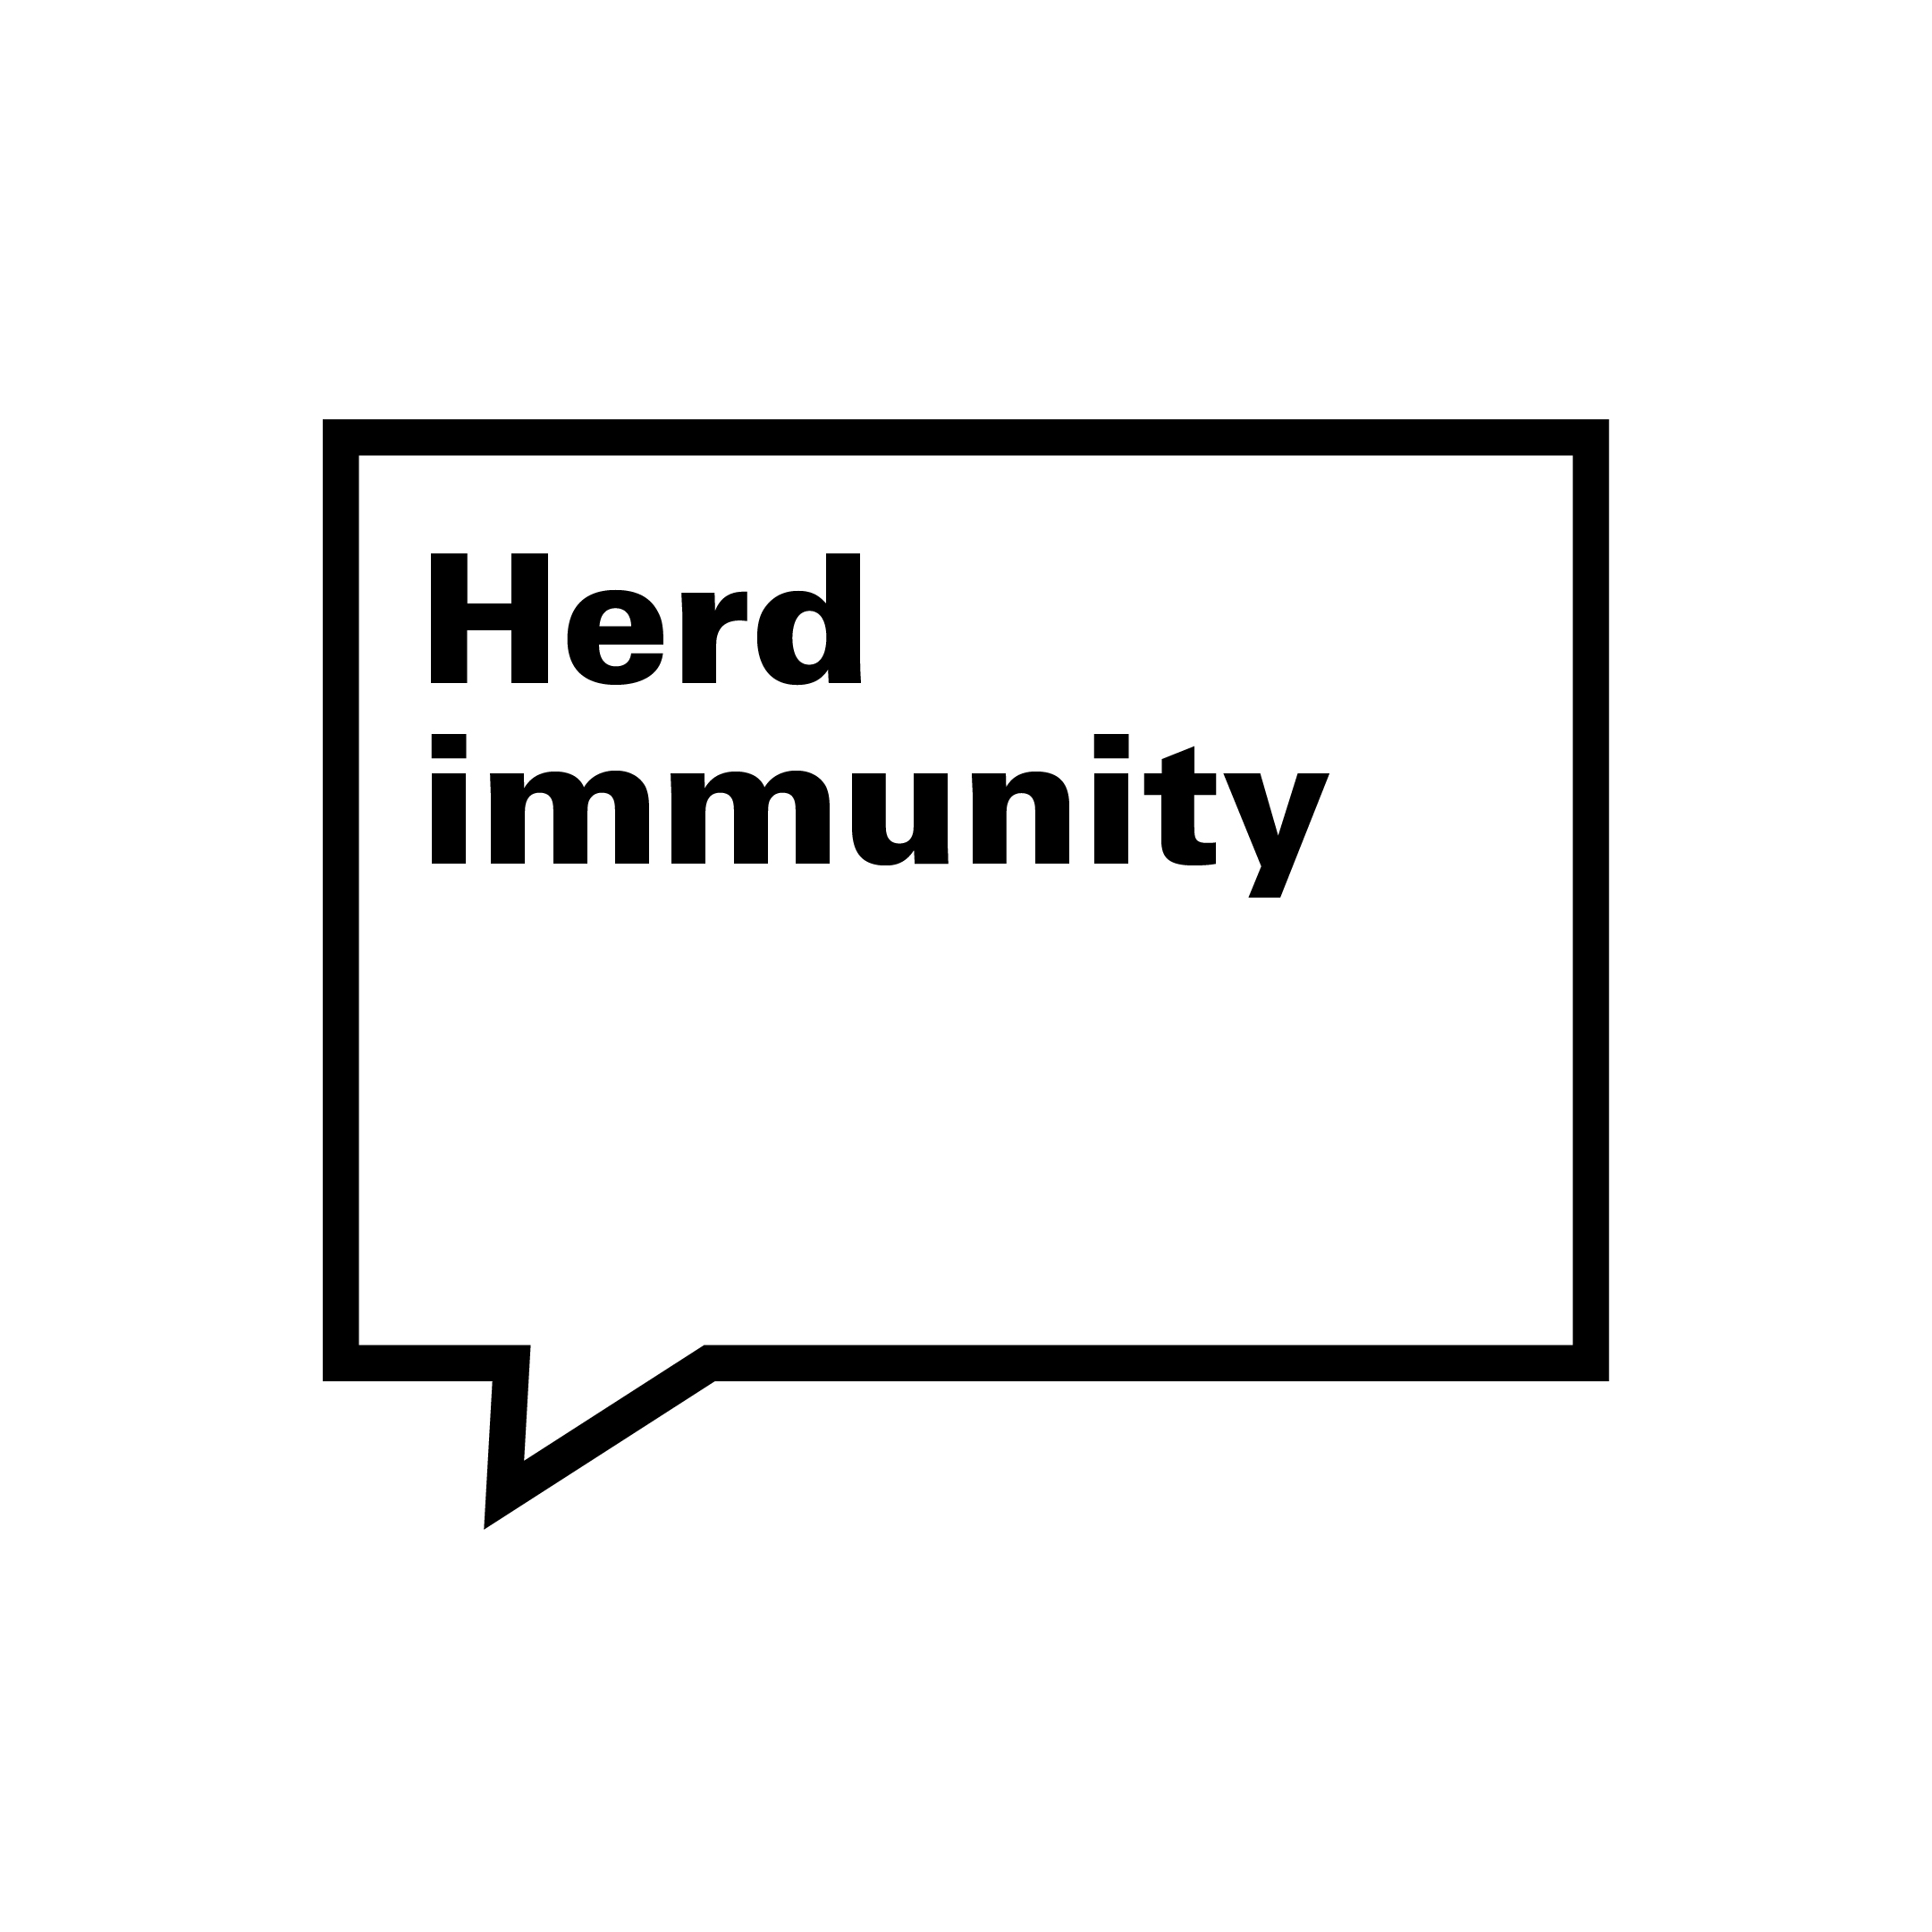 Quote-herd-immunity-Black.jpg